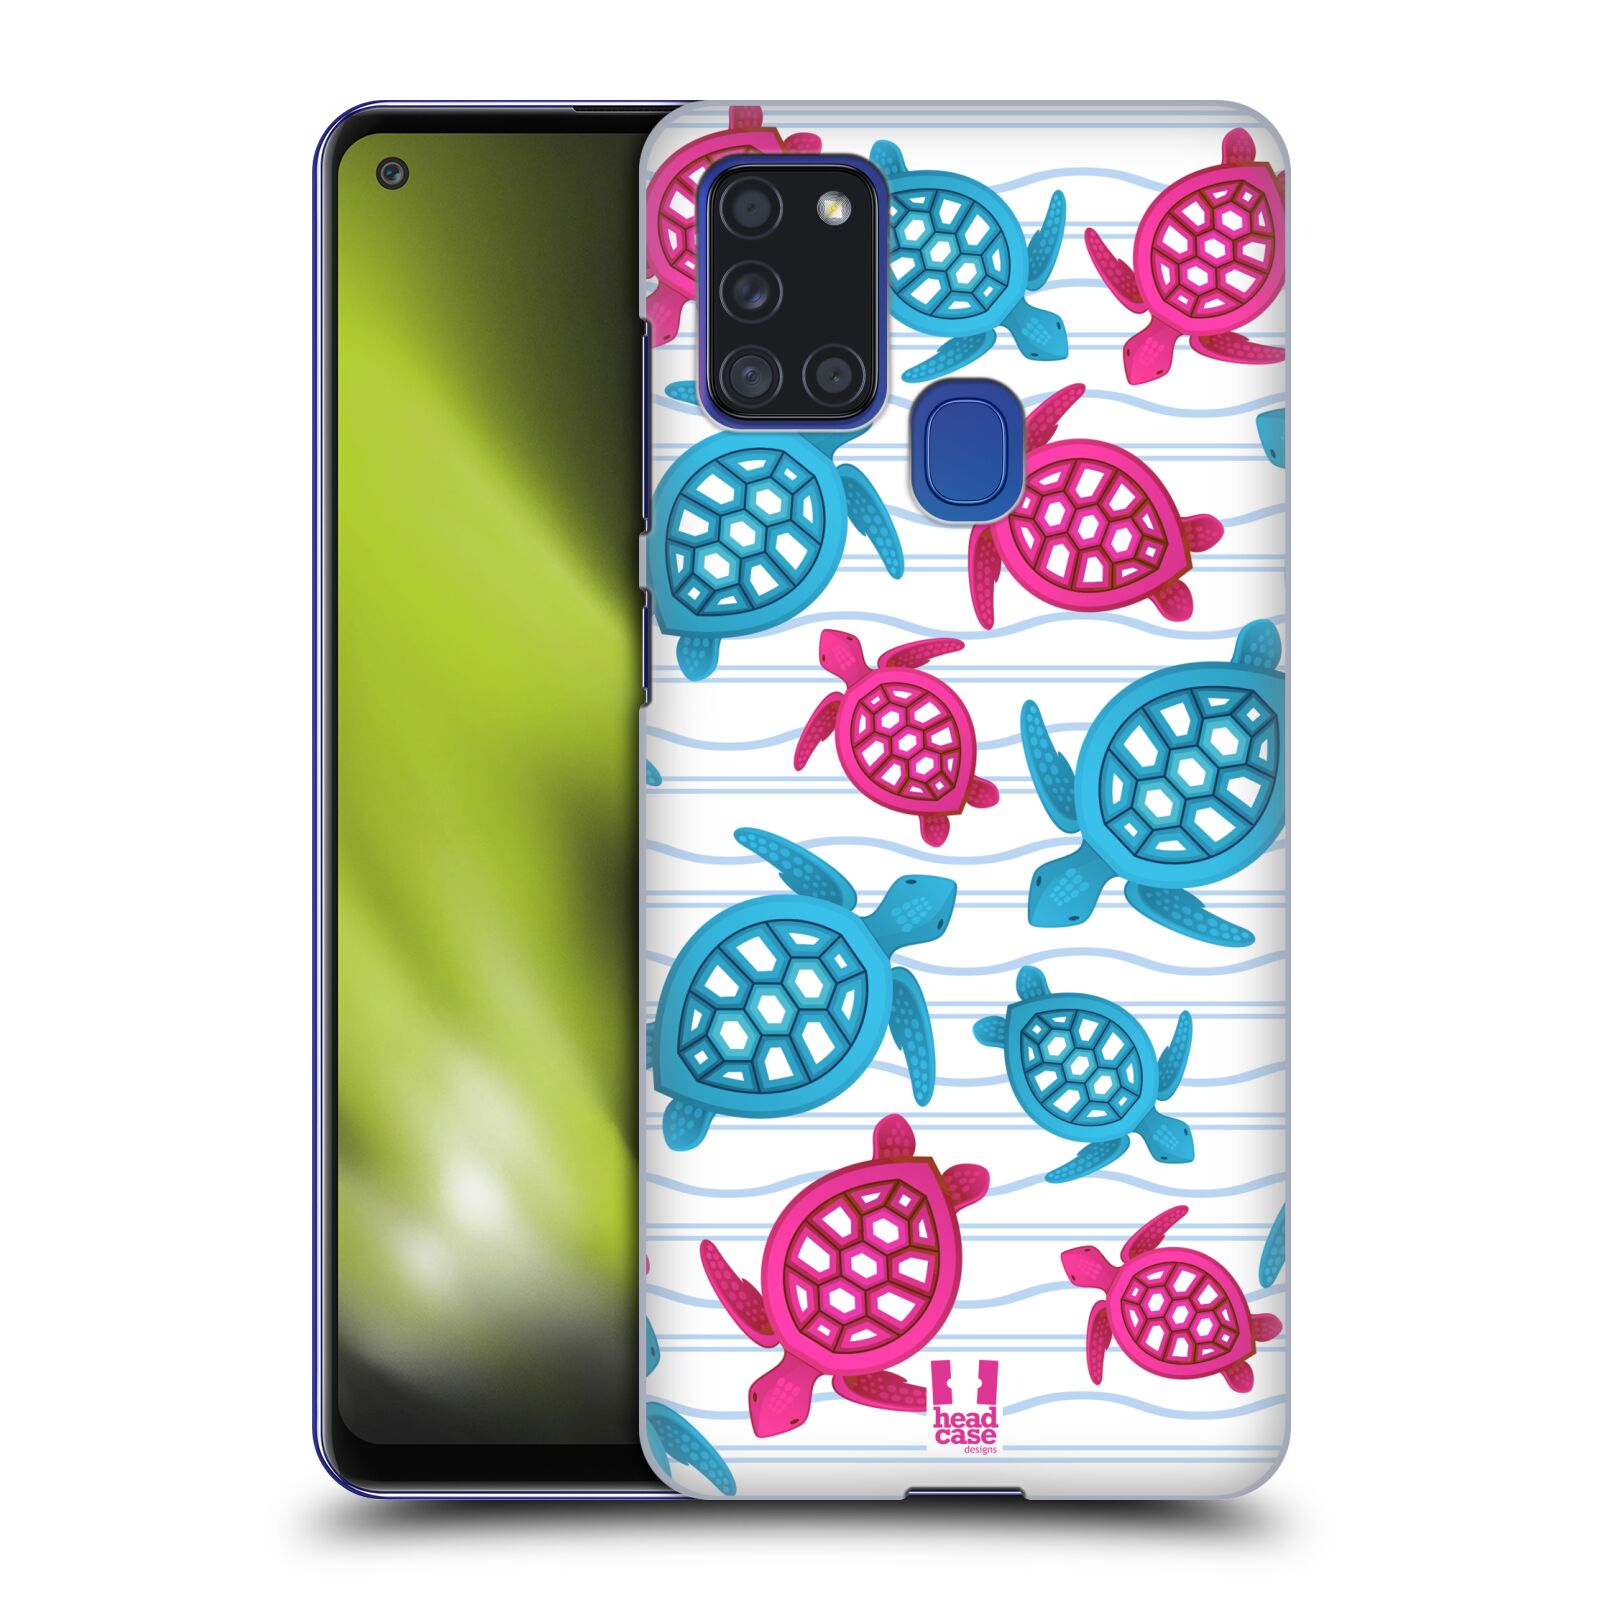 Zadní obal pro mobil Samsung Galaxy A21s - HEAD CASE - kreslený mořský vzor želvičky